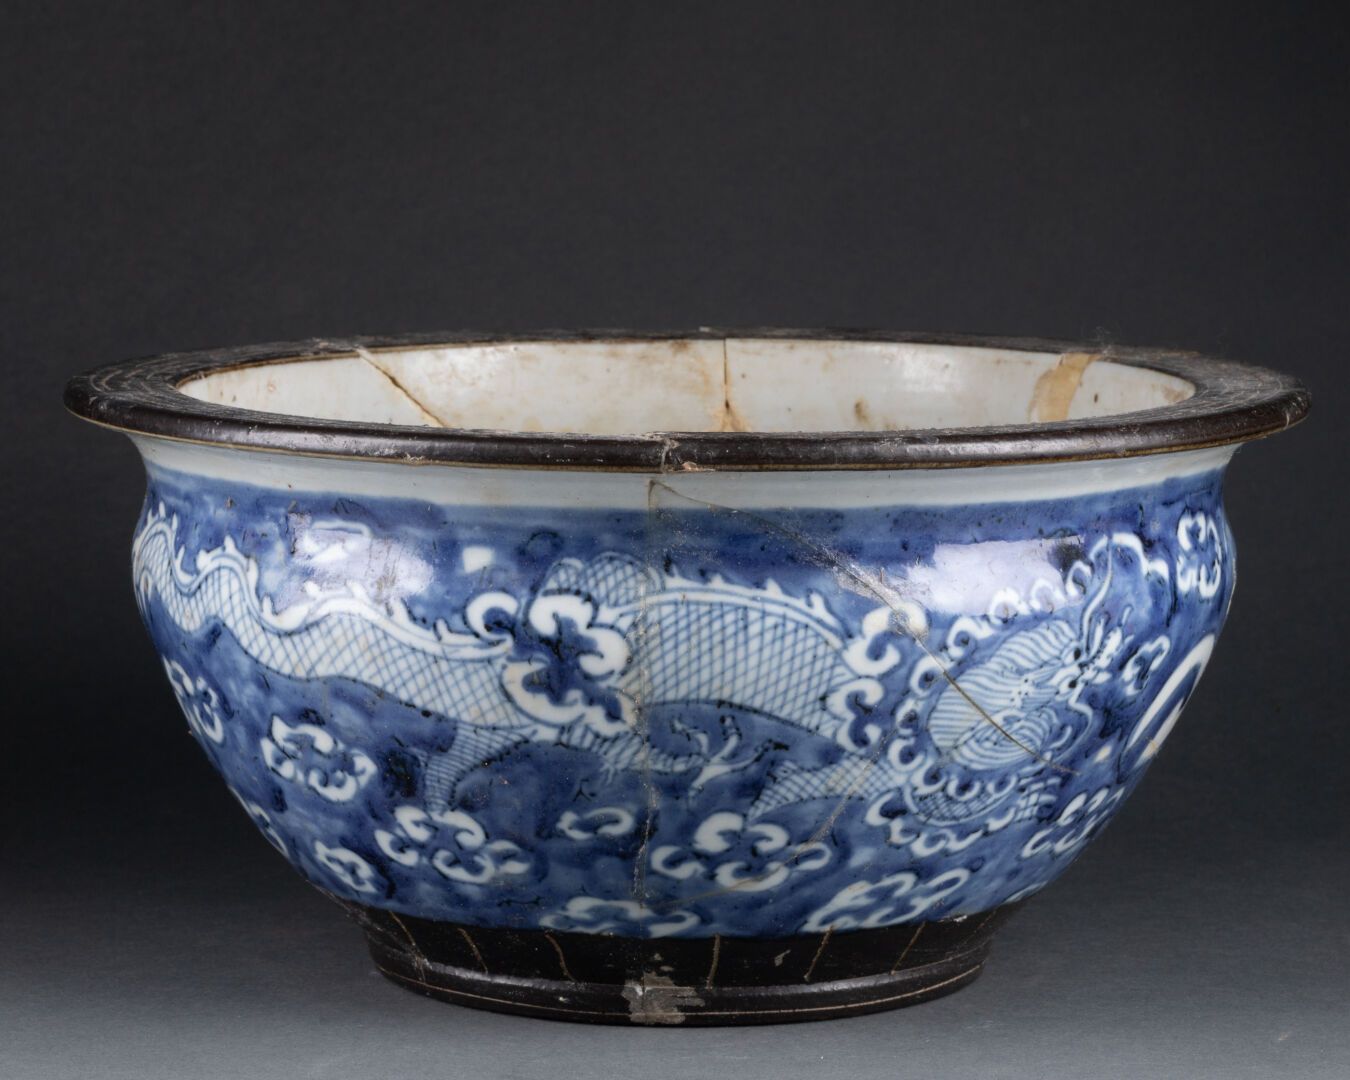 CHINE - XIXe siècle 云中龙大杯 
瓷器和蓝色釉下彩，唇呈褐色 
H.12.5 cm - D. 27 cm 
事故